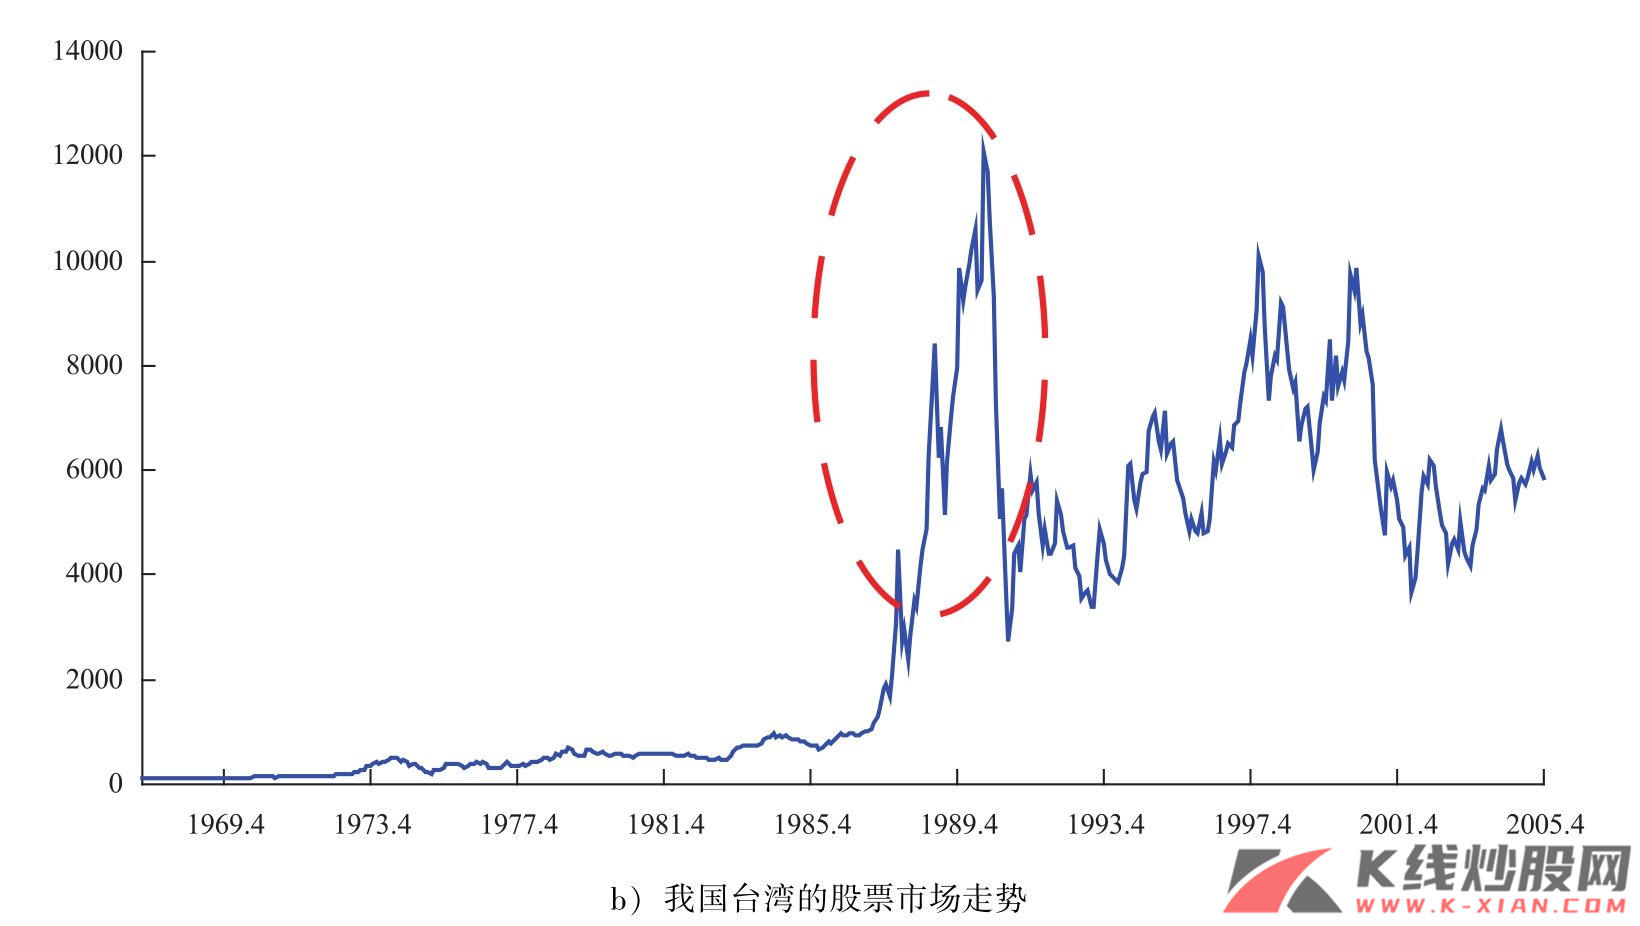 韩国和我国台湾的股票市场走势（续）